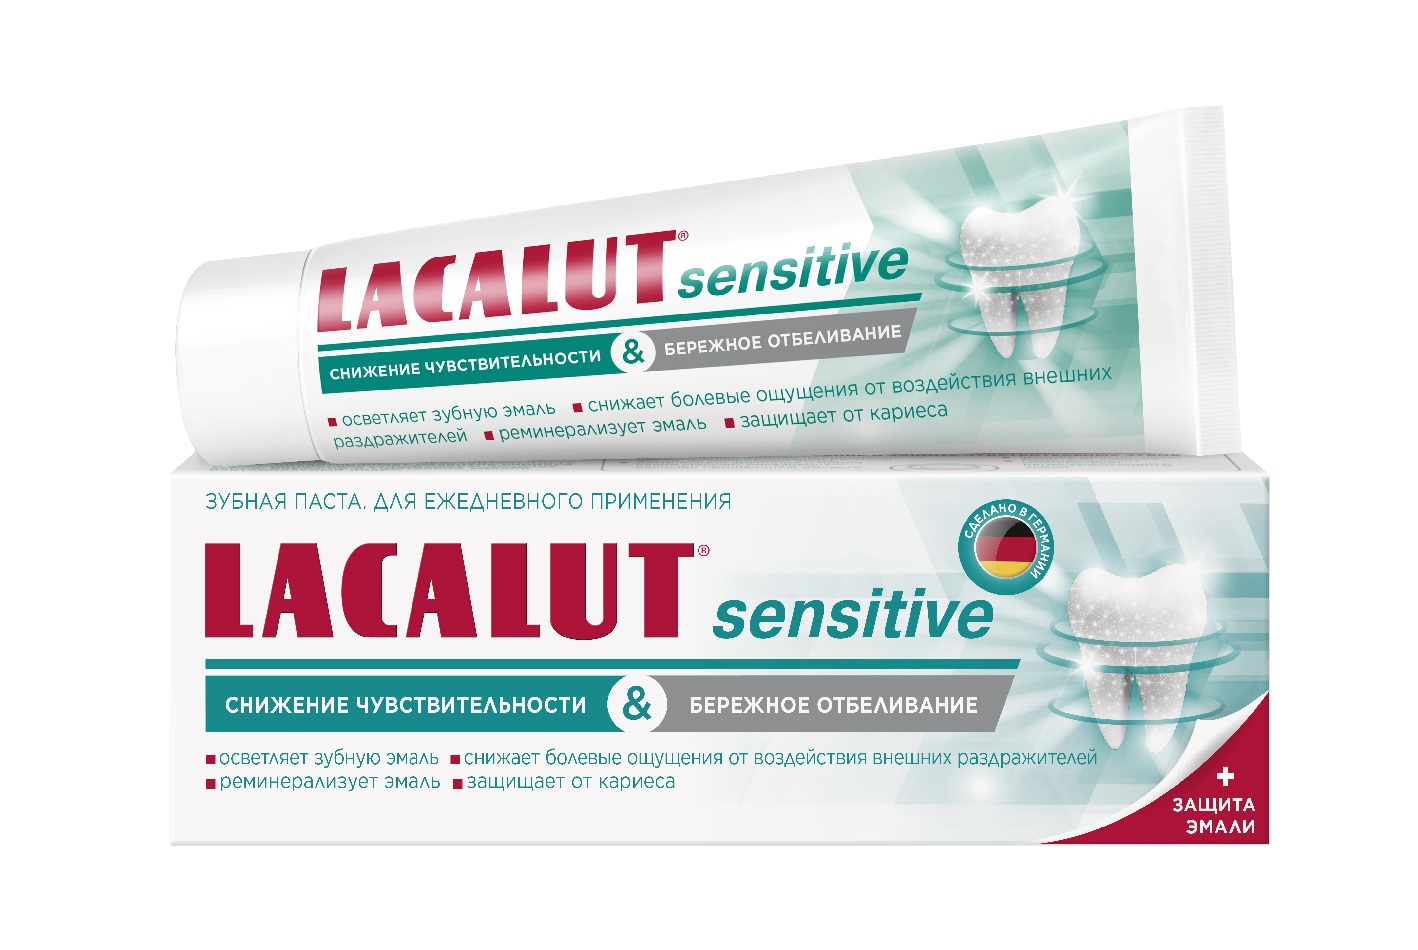 Купить Лакалют паста зубная Сенситив снижение чувствительности и бережное отбеливание 65г, Dr.Theiss Naturwaren GmbH